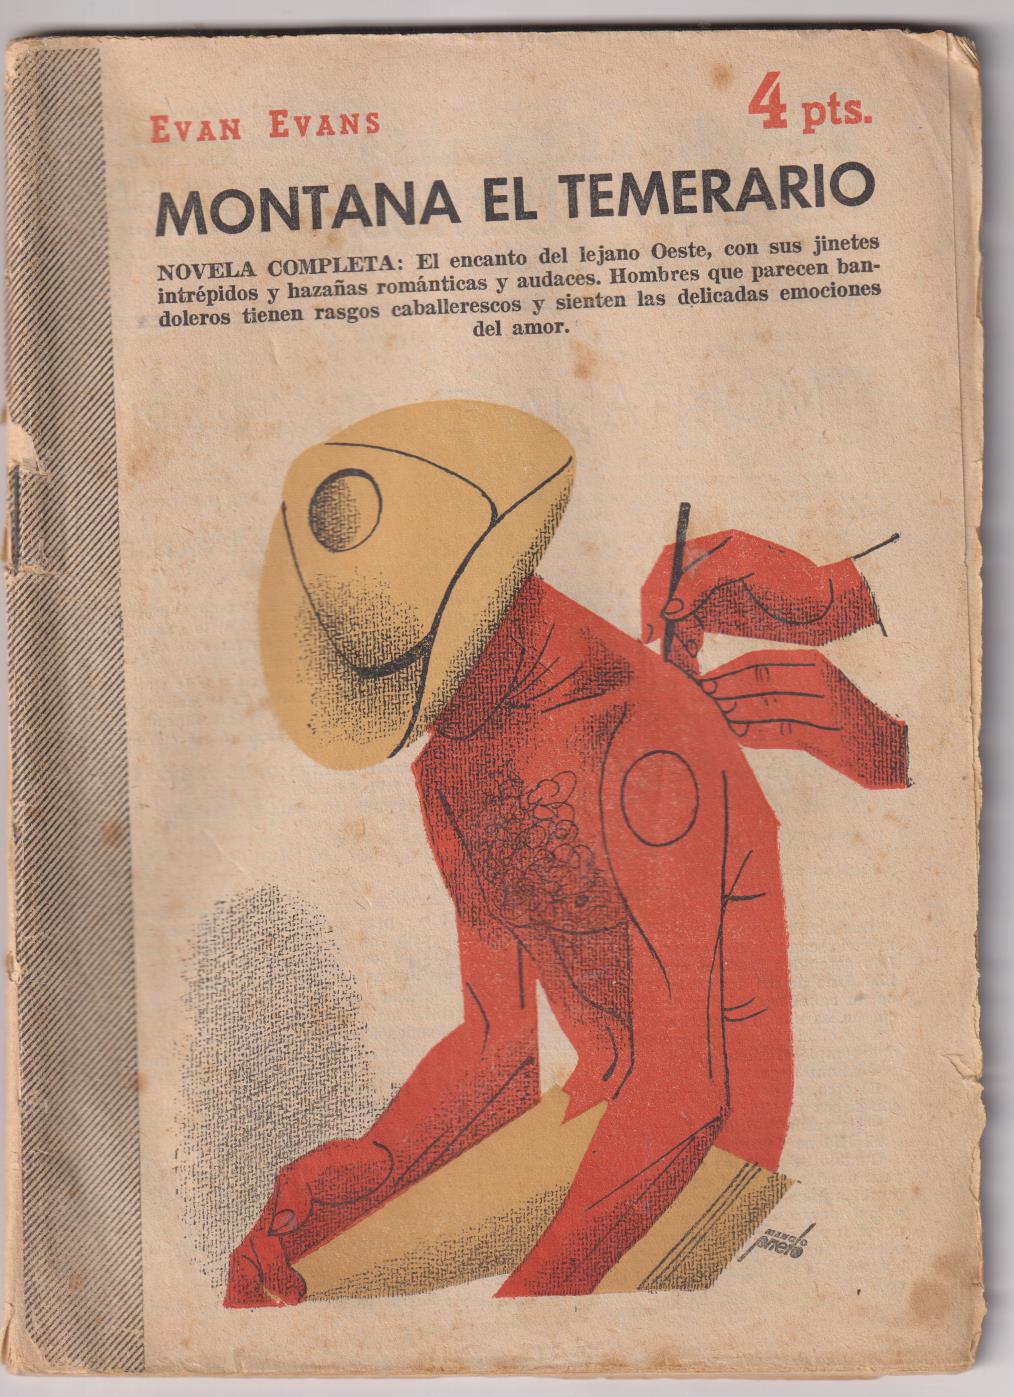 Revista Literaria Novelas y Cuentos nº 1318. Montana El Temerario por Evan Evans. Año 1956